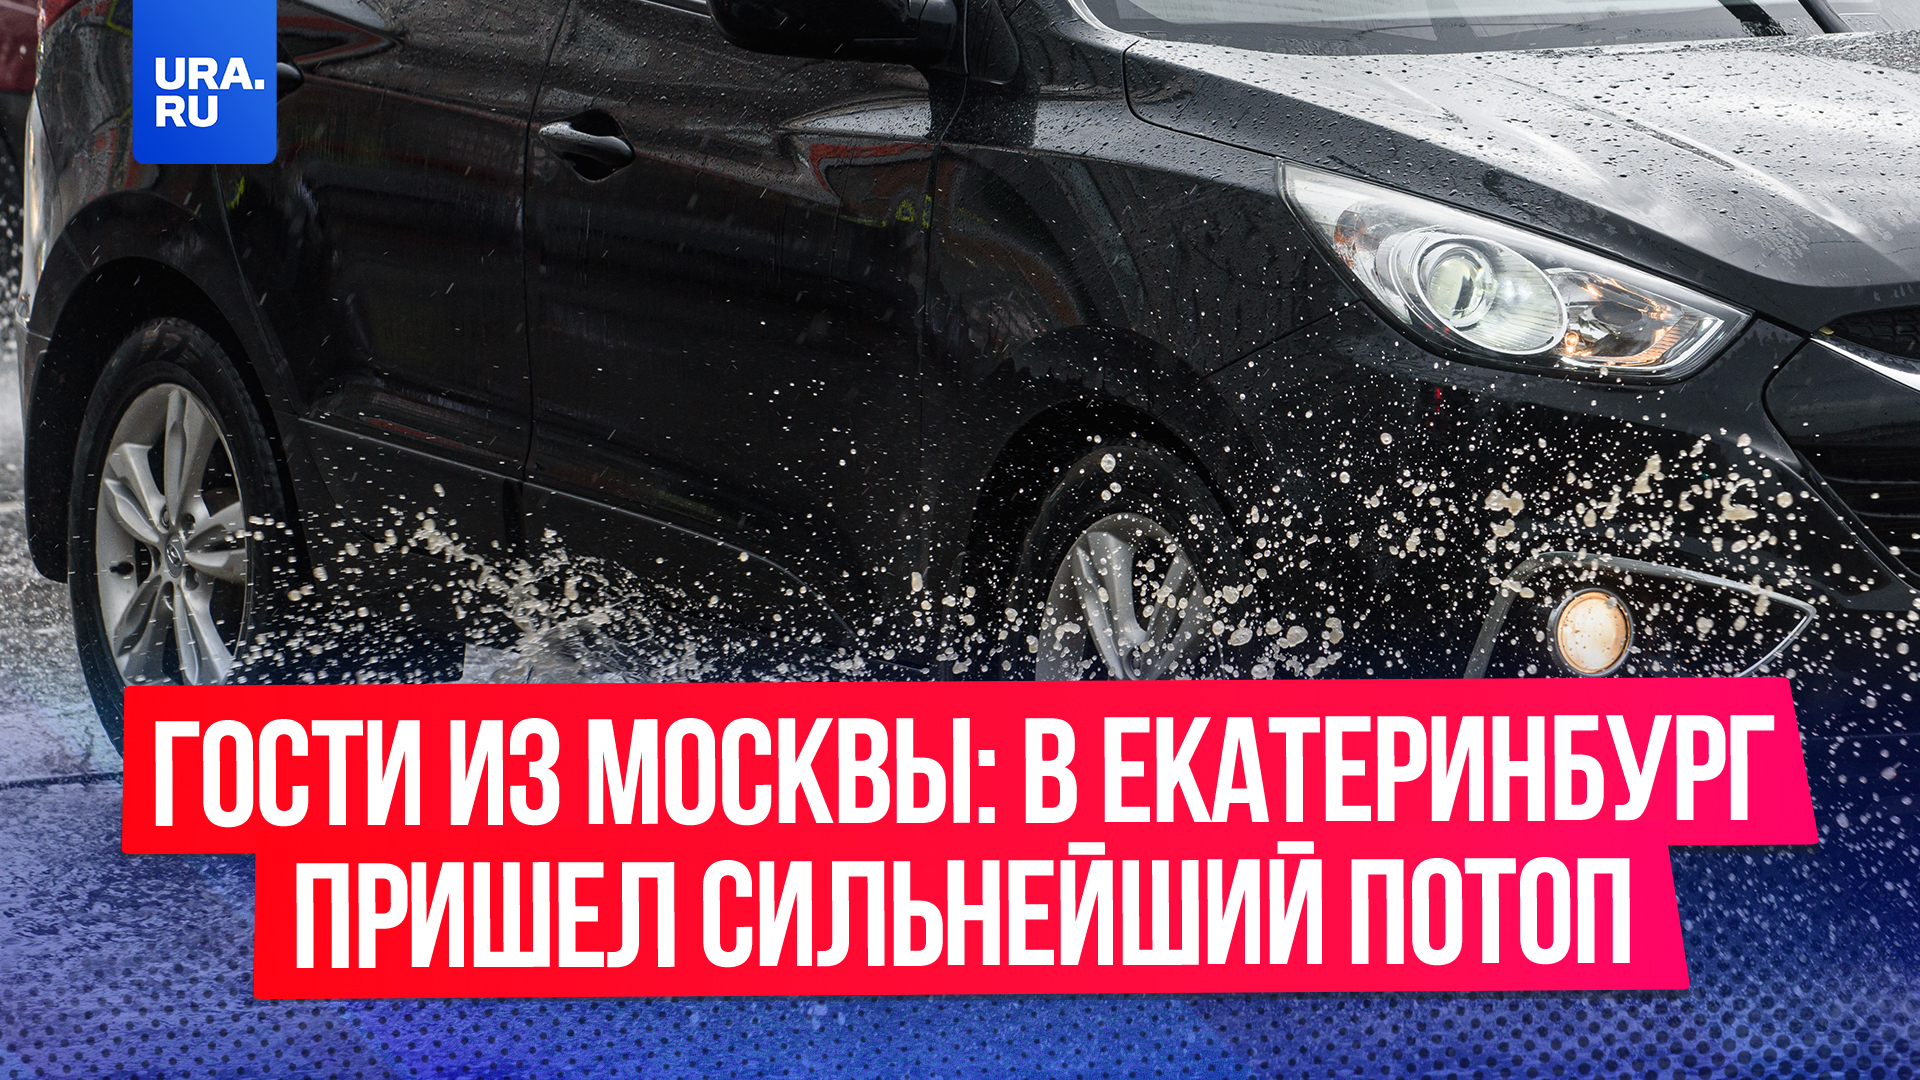 Гости из Москвы: в Екатеринбург пришел сильнейший потоп